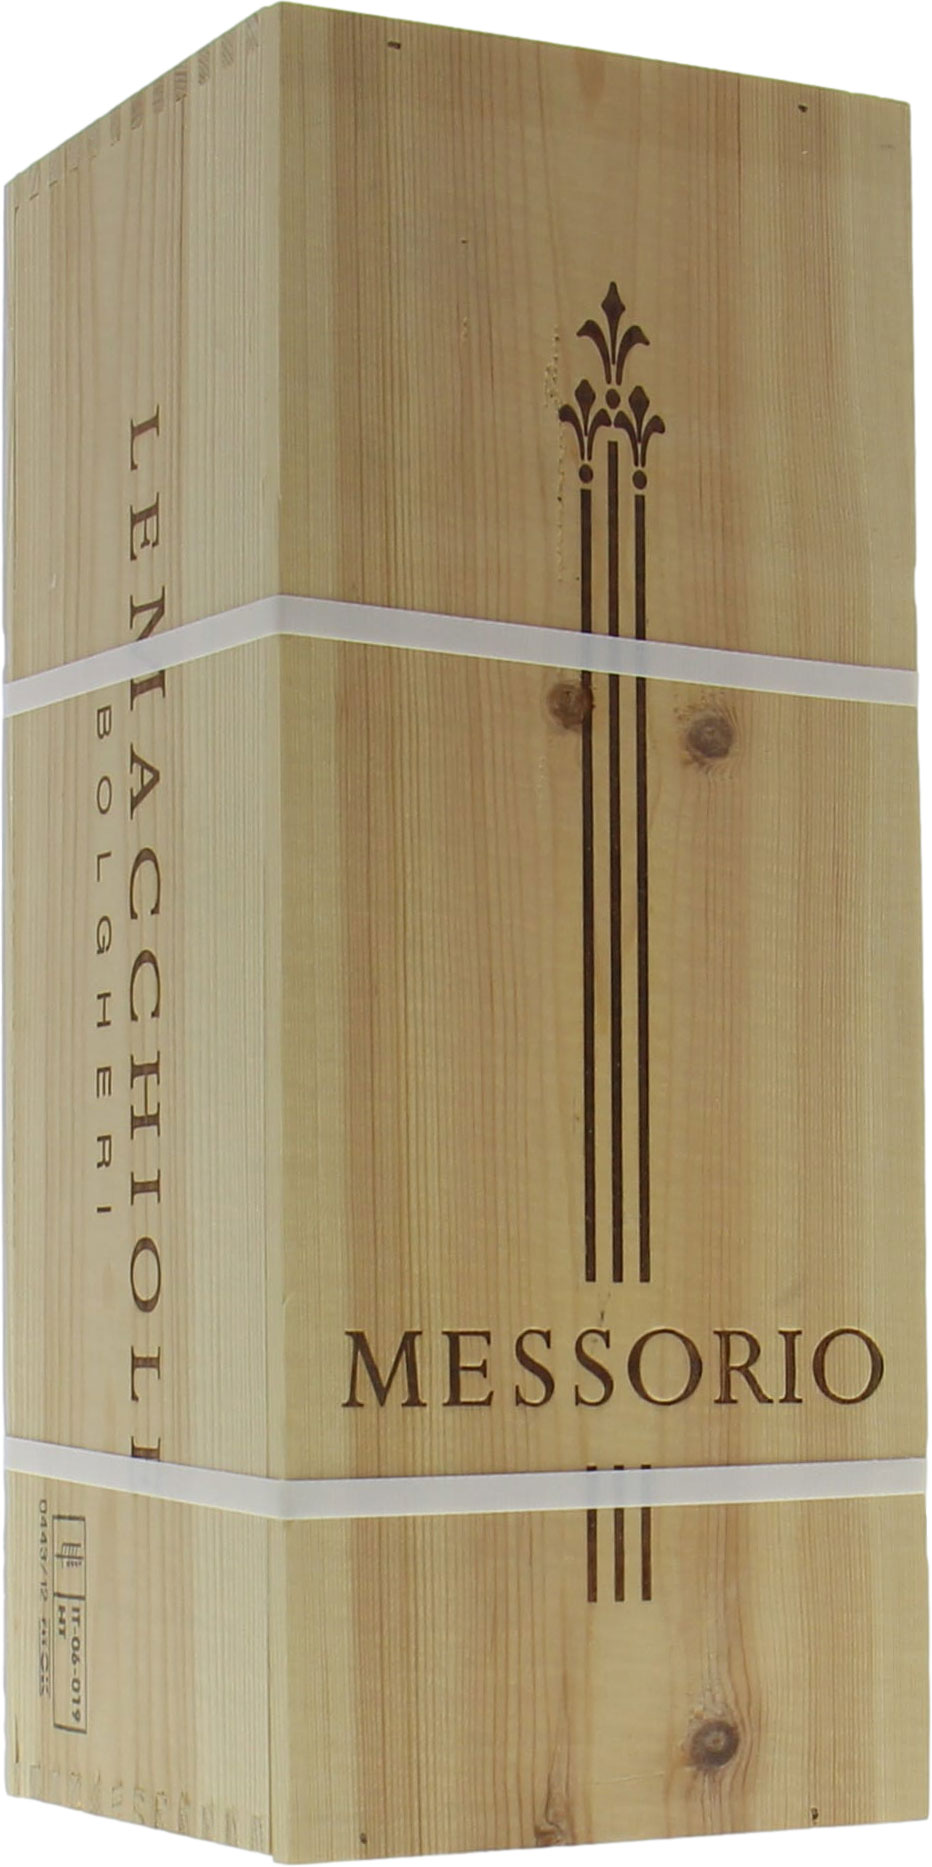 Le Macchiole - Messorio 2011 Perfect